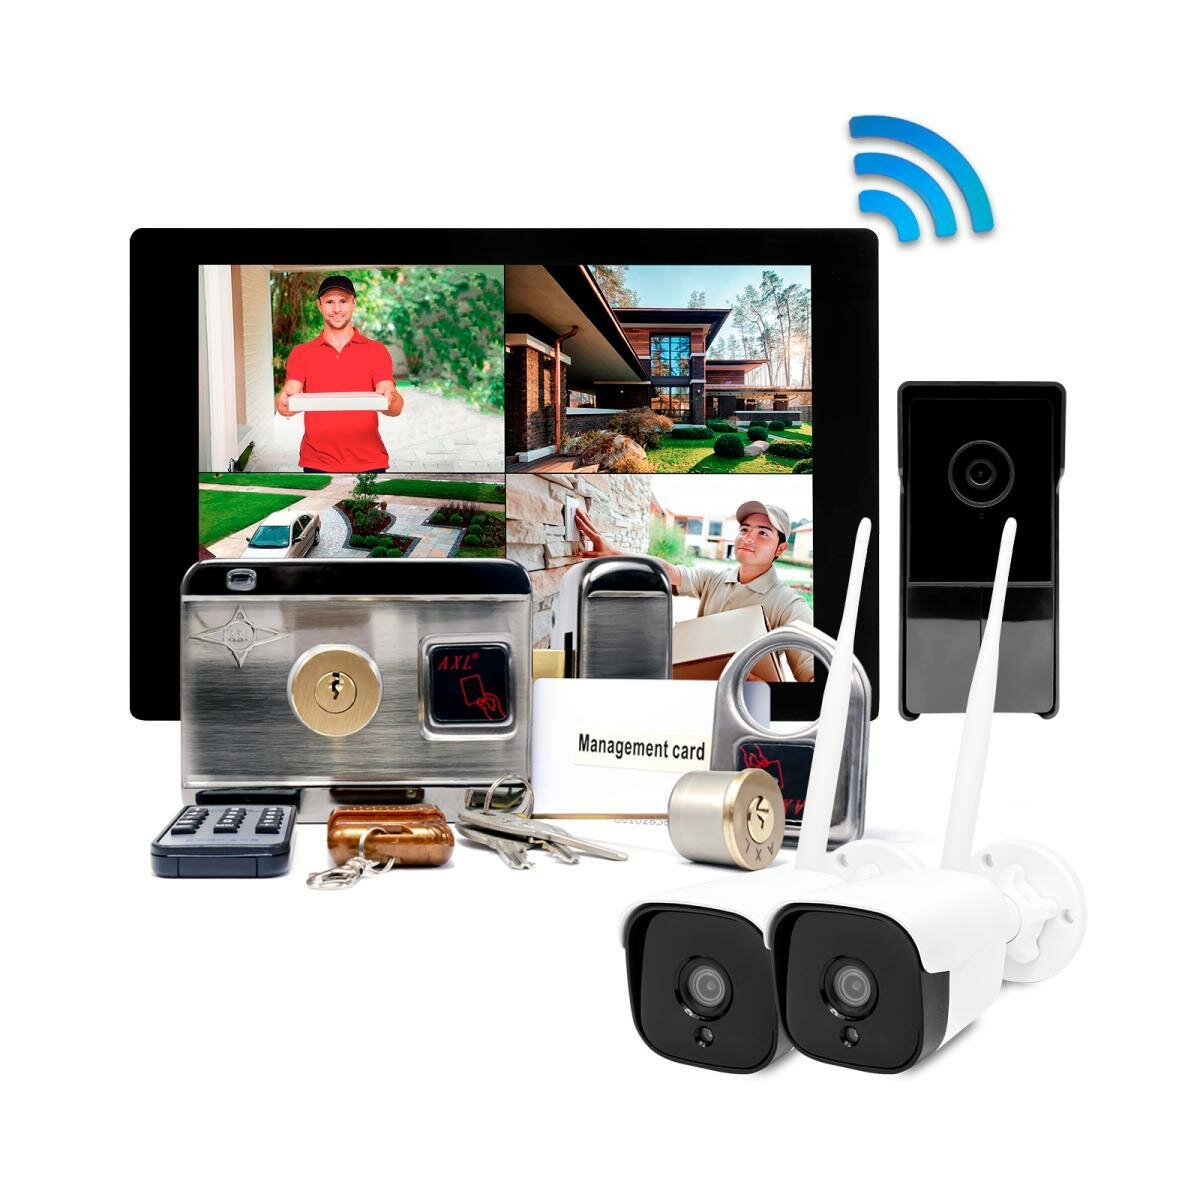 Беспроводной видеодомофон с 2 камерами и замком - SkyNet (1+2+AX066) 1000 (N50379RA): Wi-Fi HD монитор 10 дюймов, вызывная панель, электромеханический